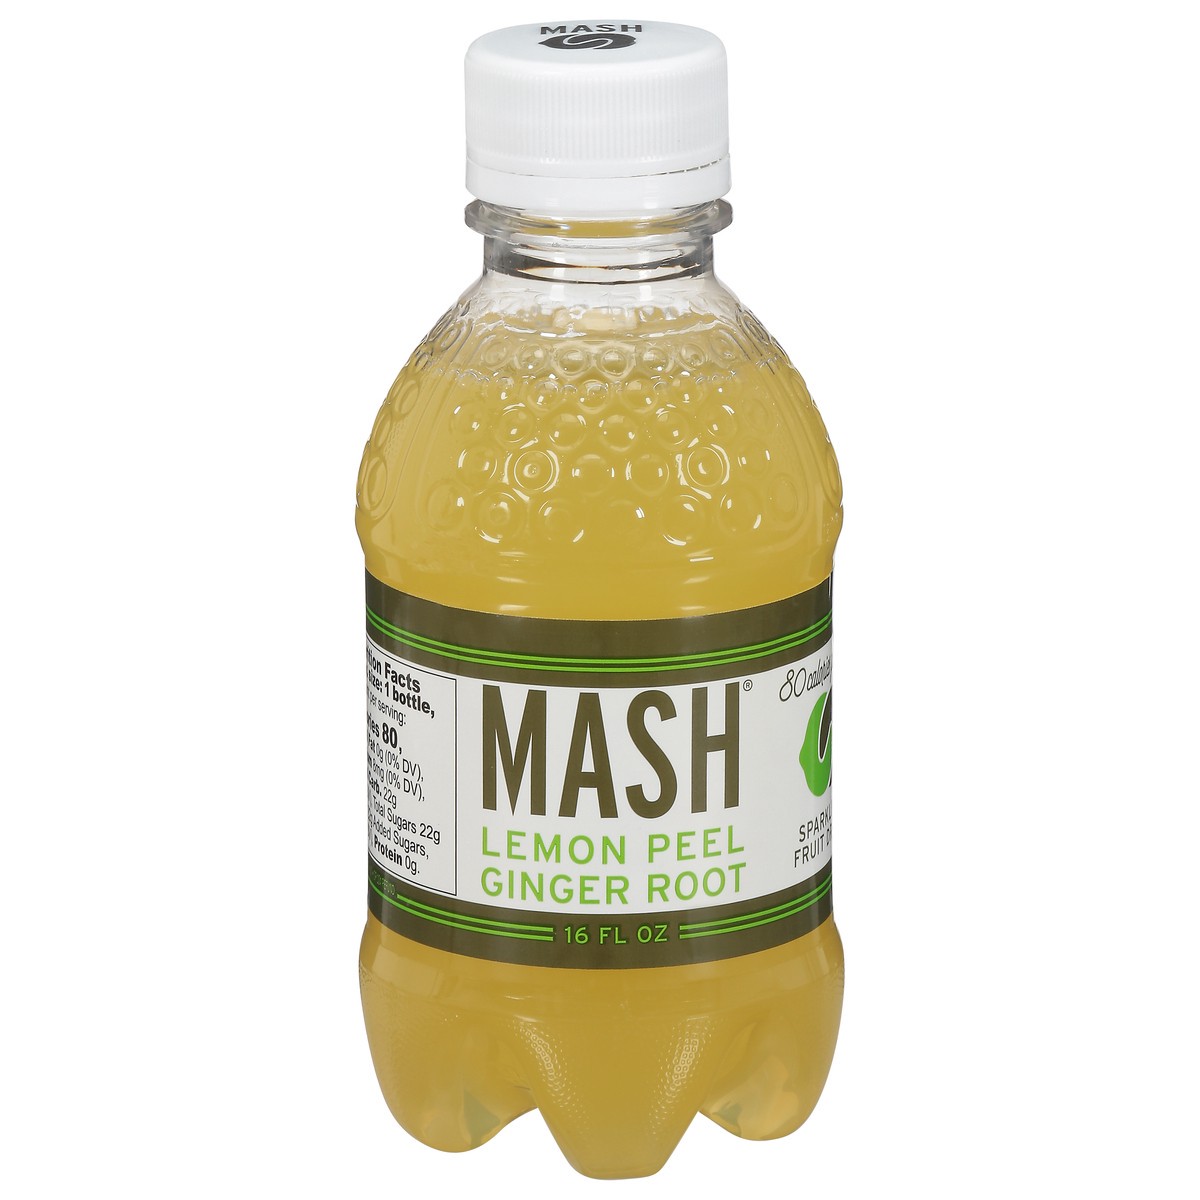 slide 1 of 4, MASH Lemon Peel Ginger Root Sparkling Fruit Drink 16 fl oz, 20 fl oz